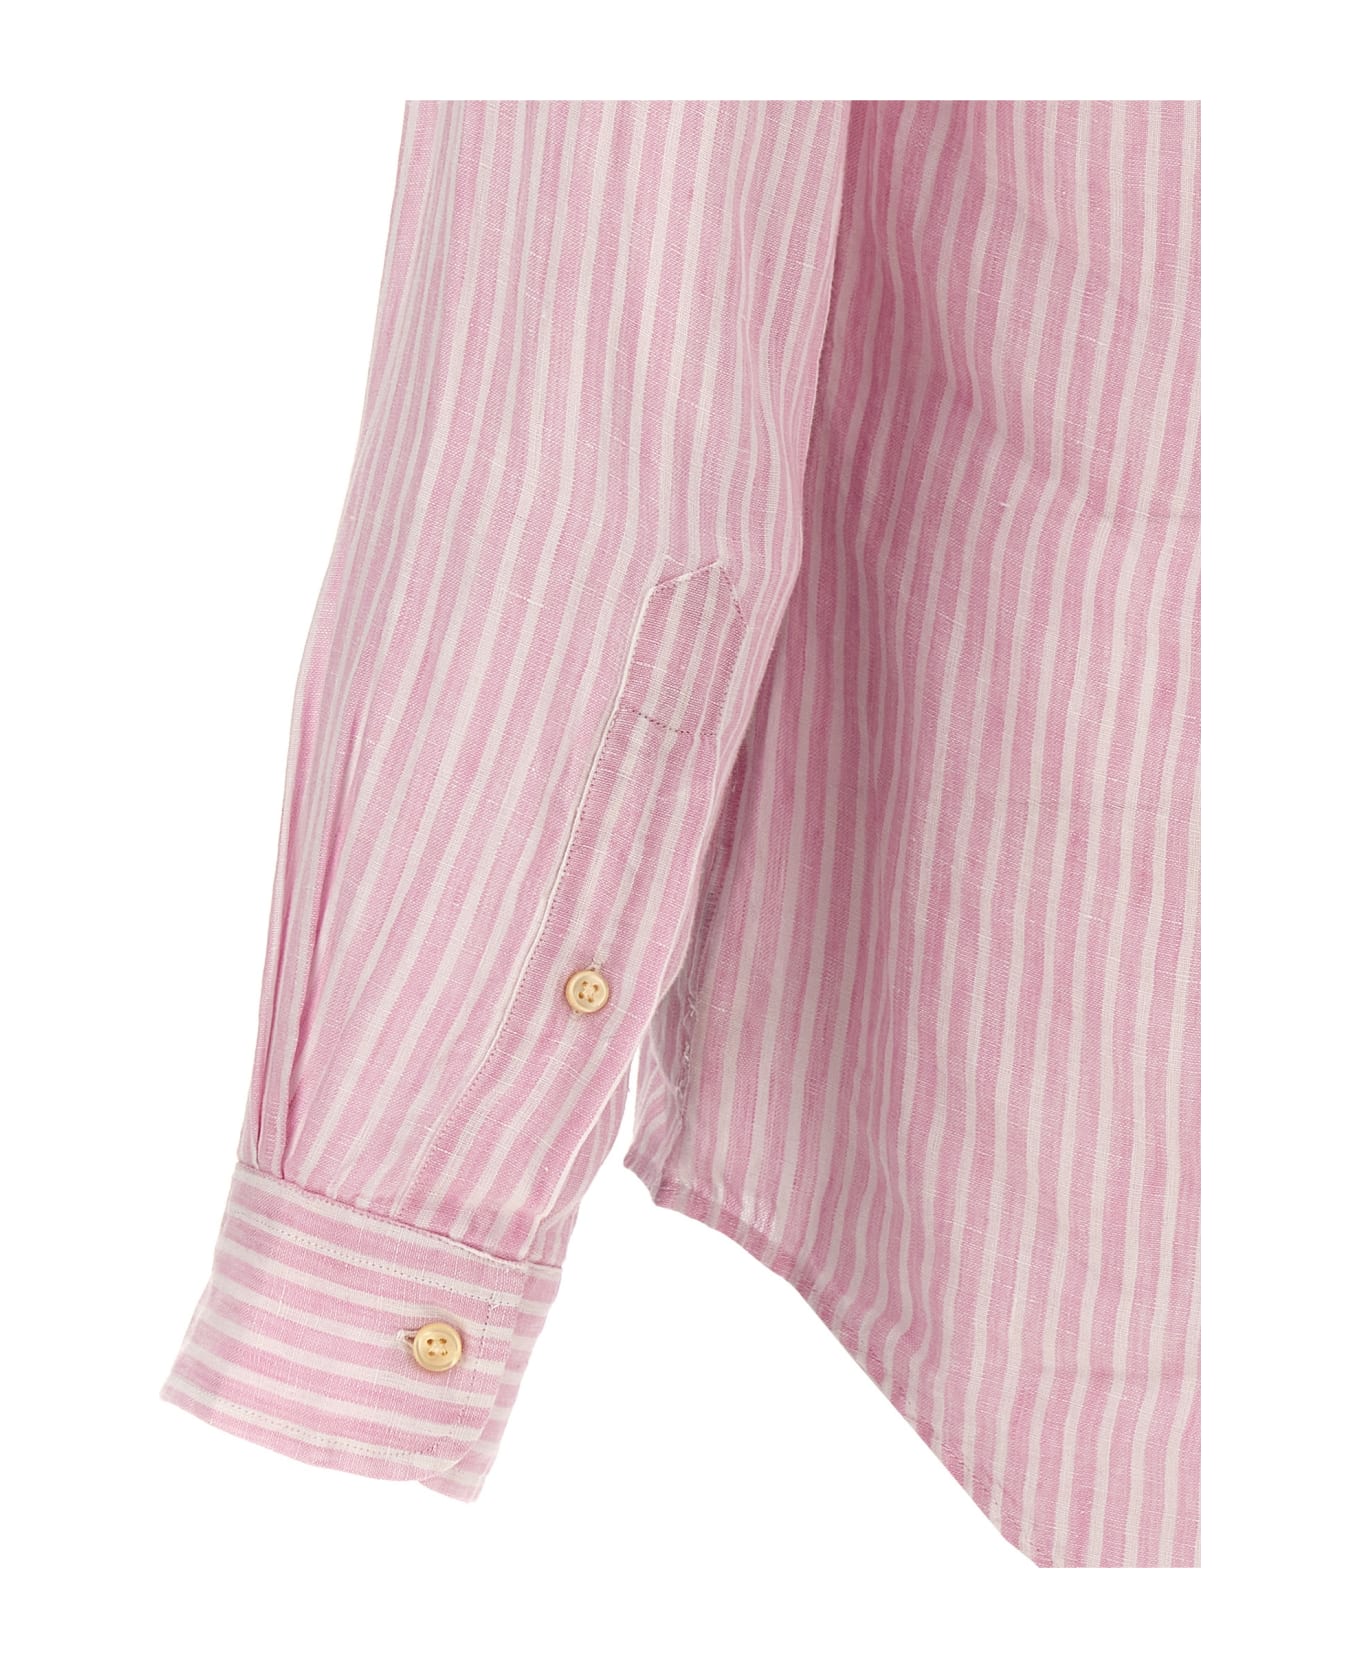 Polo Ralph Lauren Striped Linen Shirt - LIGHT PINK